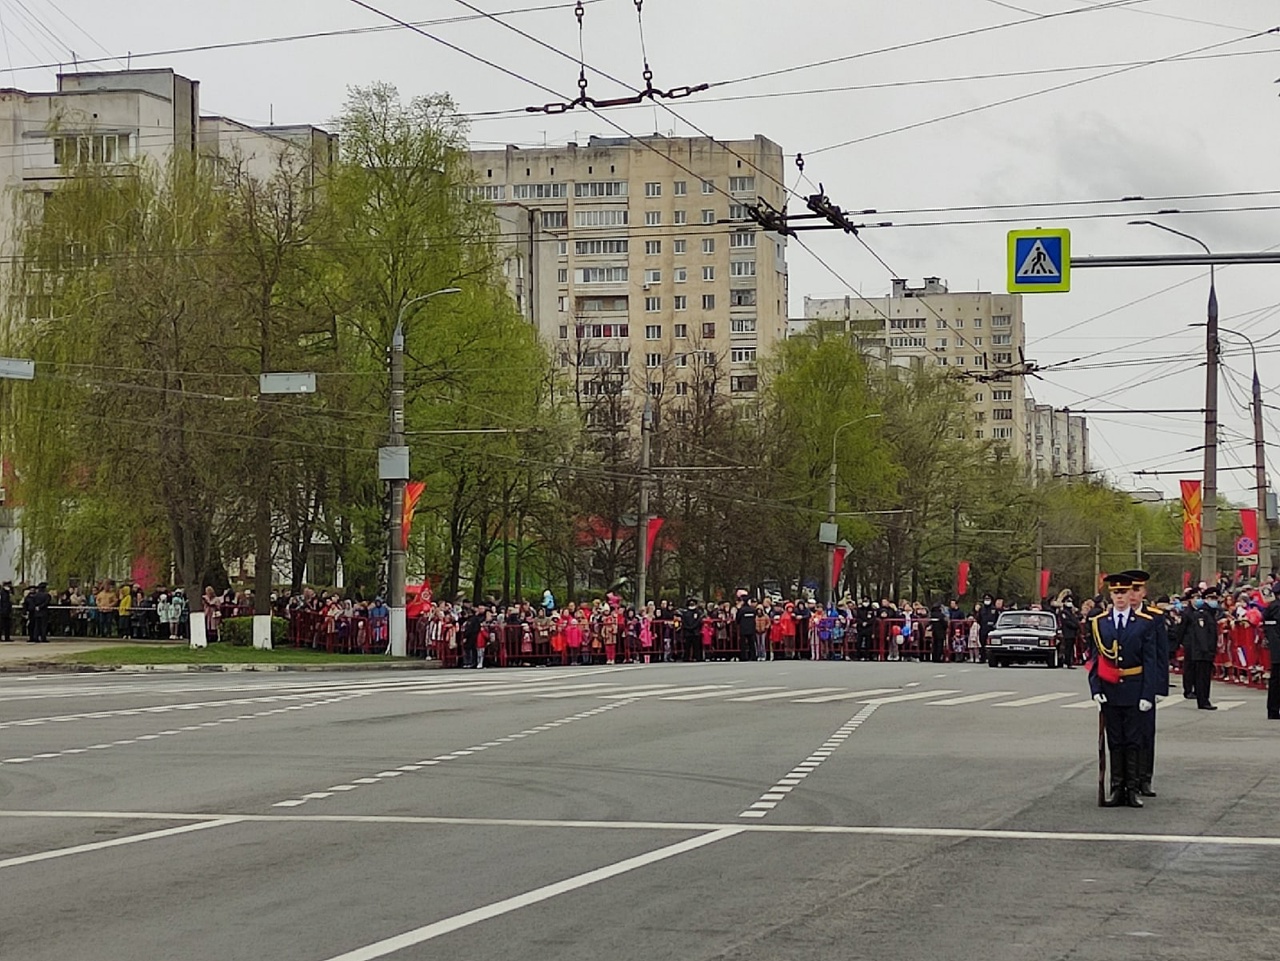 Афиша на День Победы во Владимире: программа и расписание мероприятий